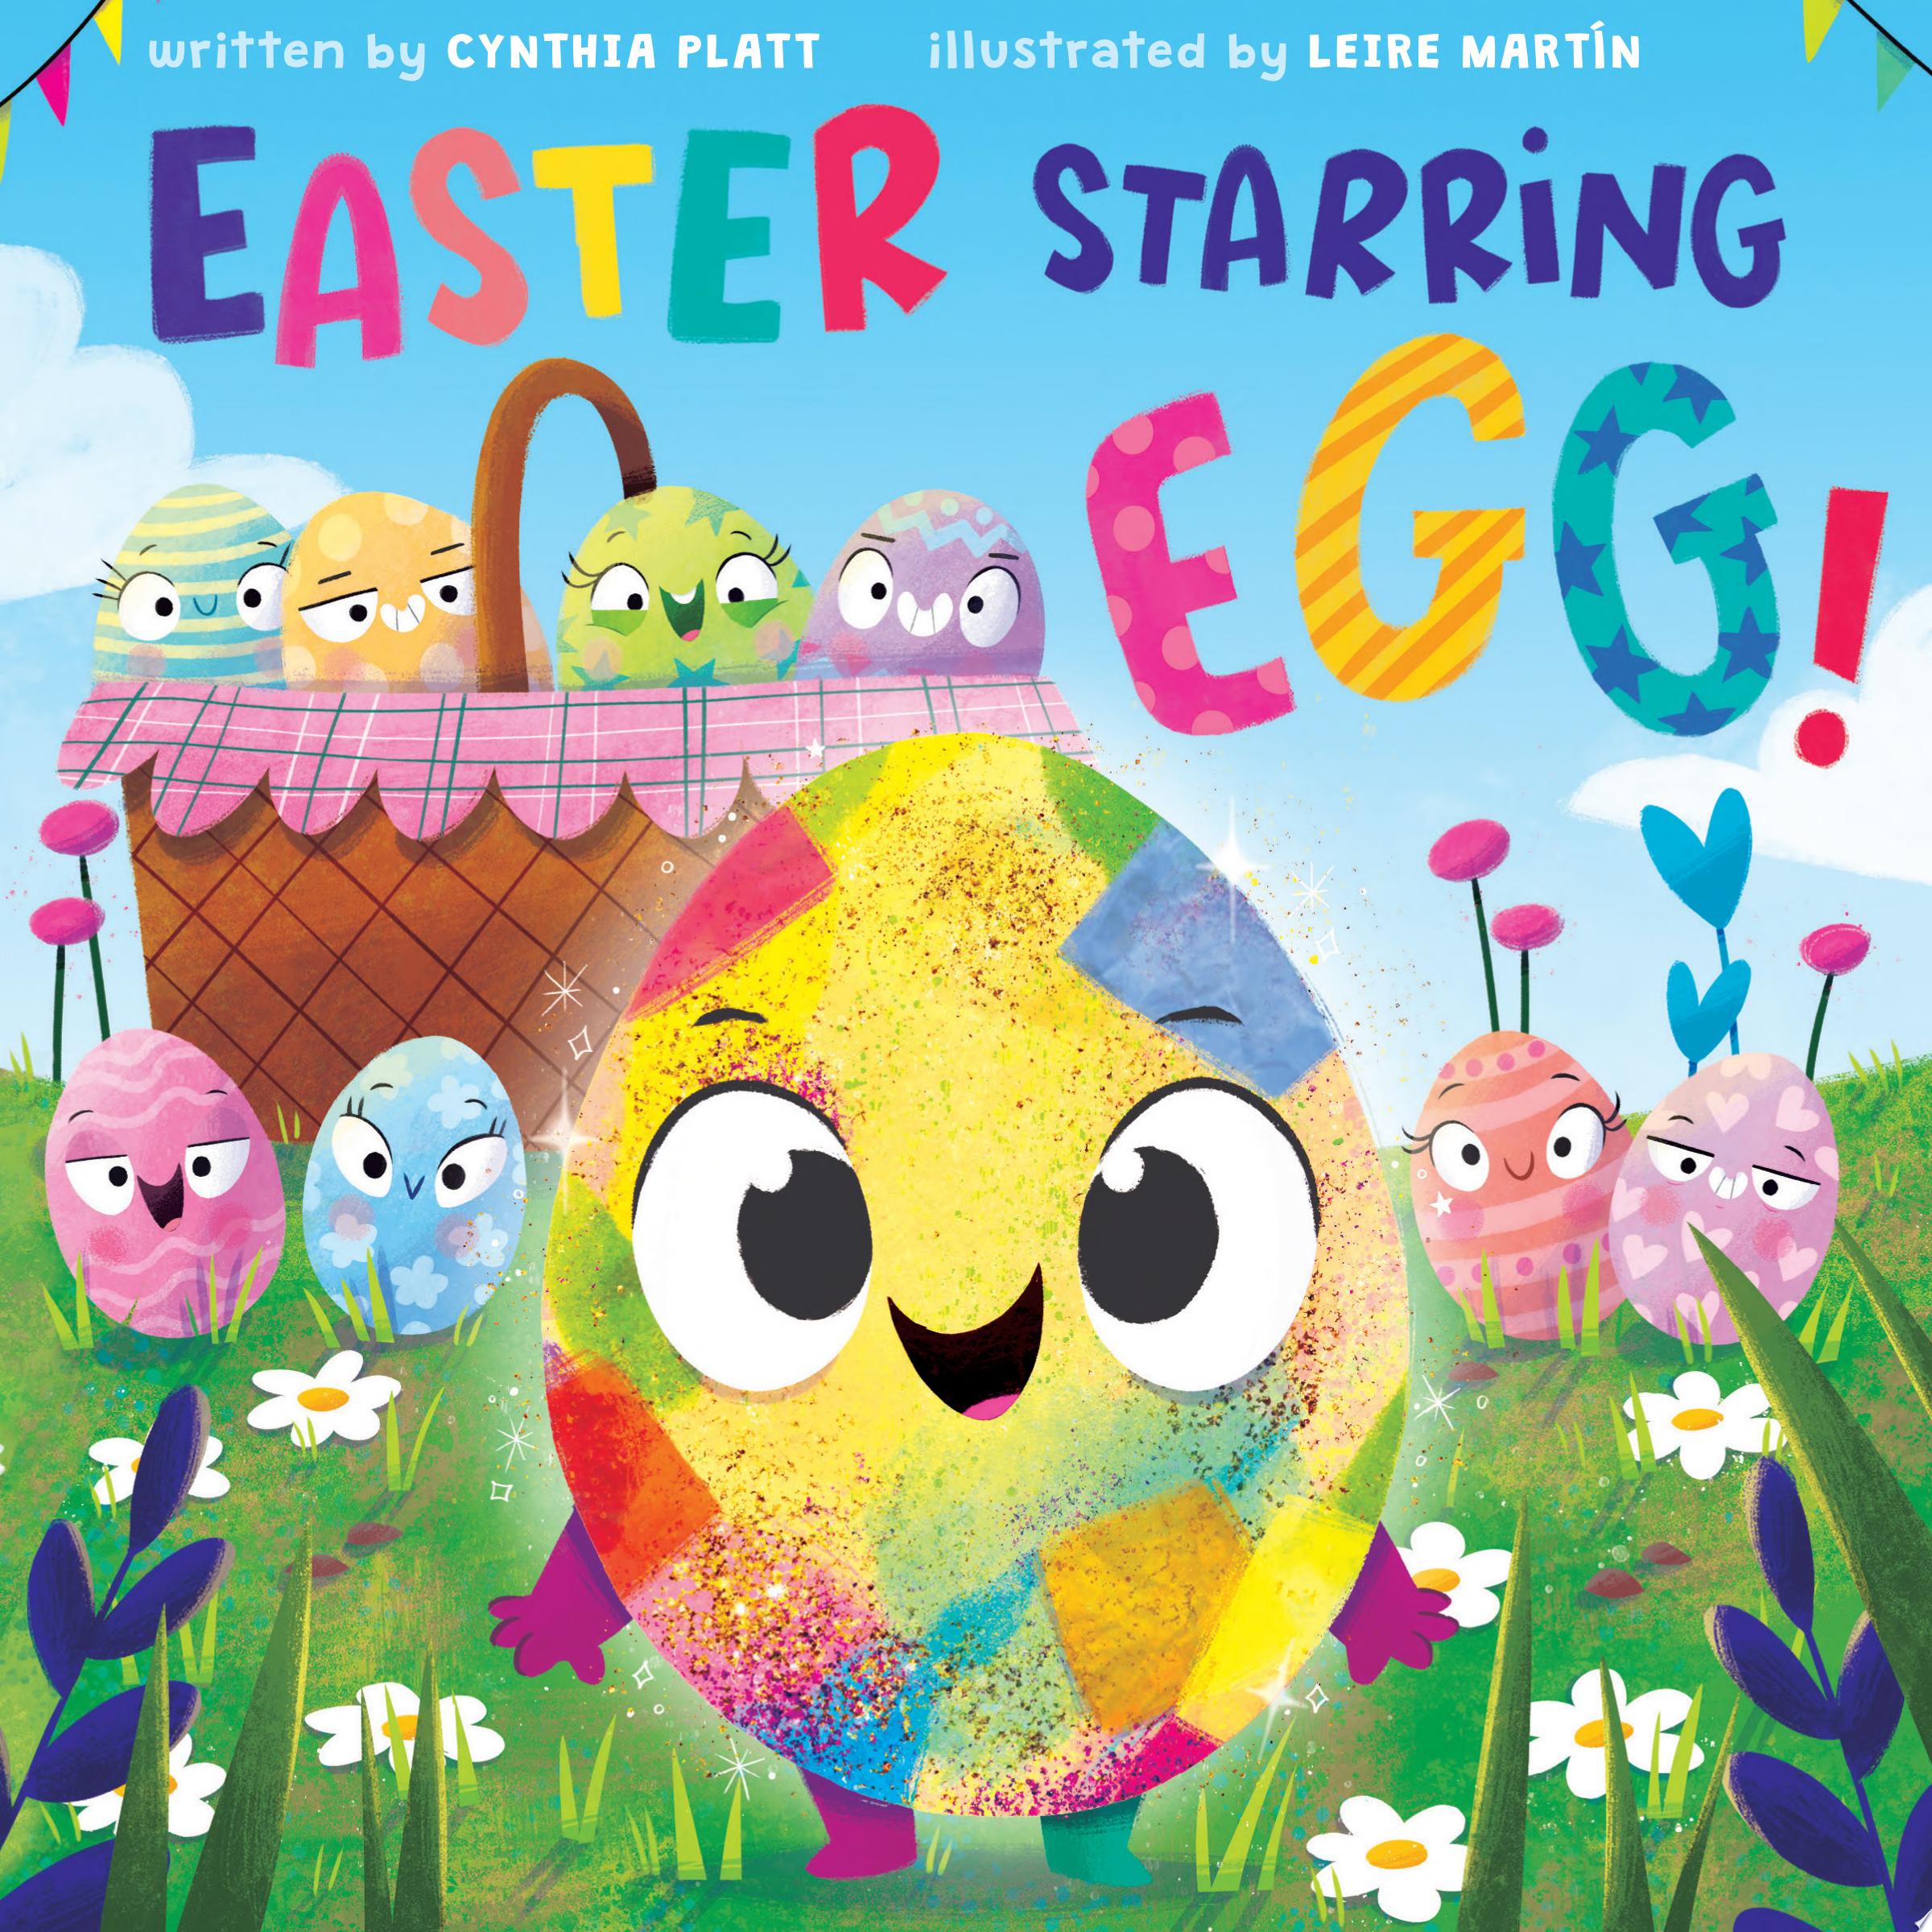 Image for "Easter Starring Egg!"